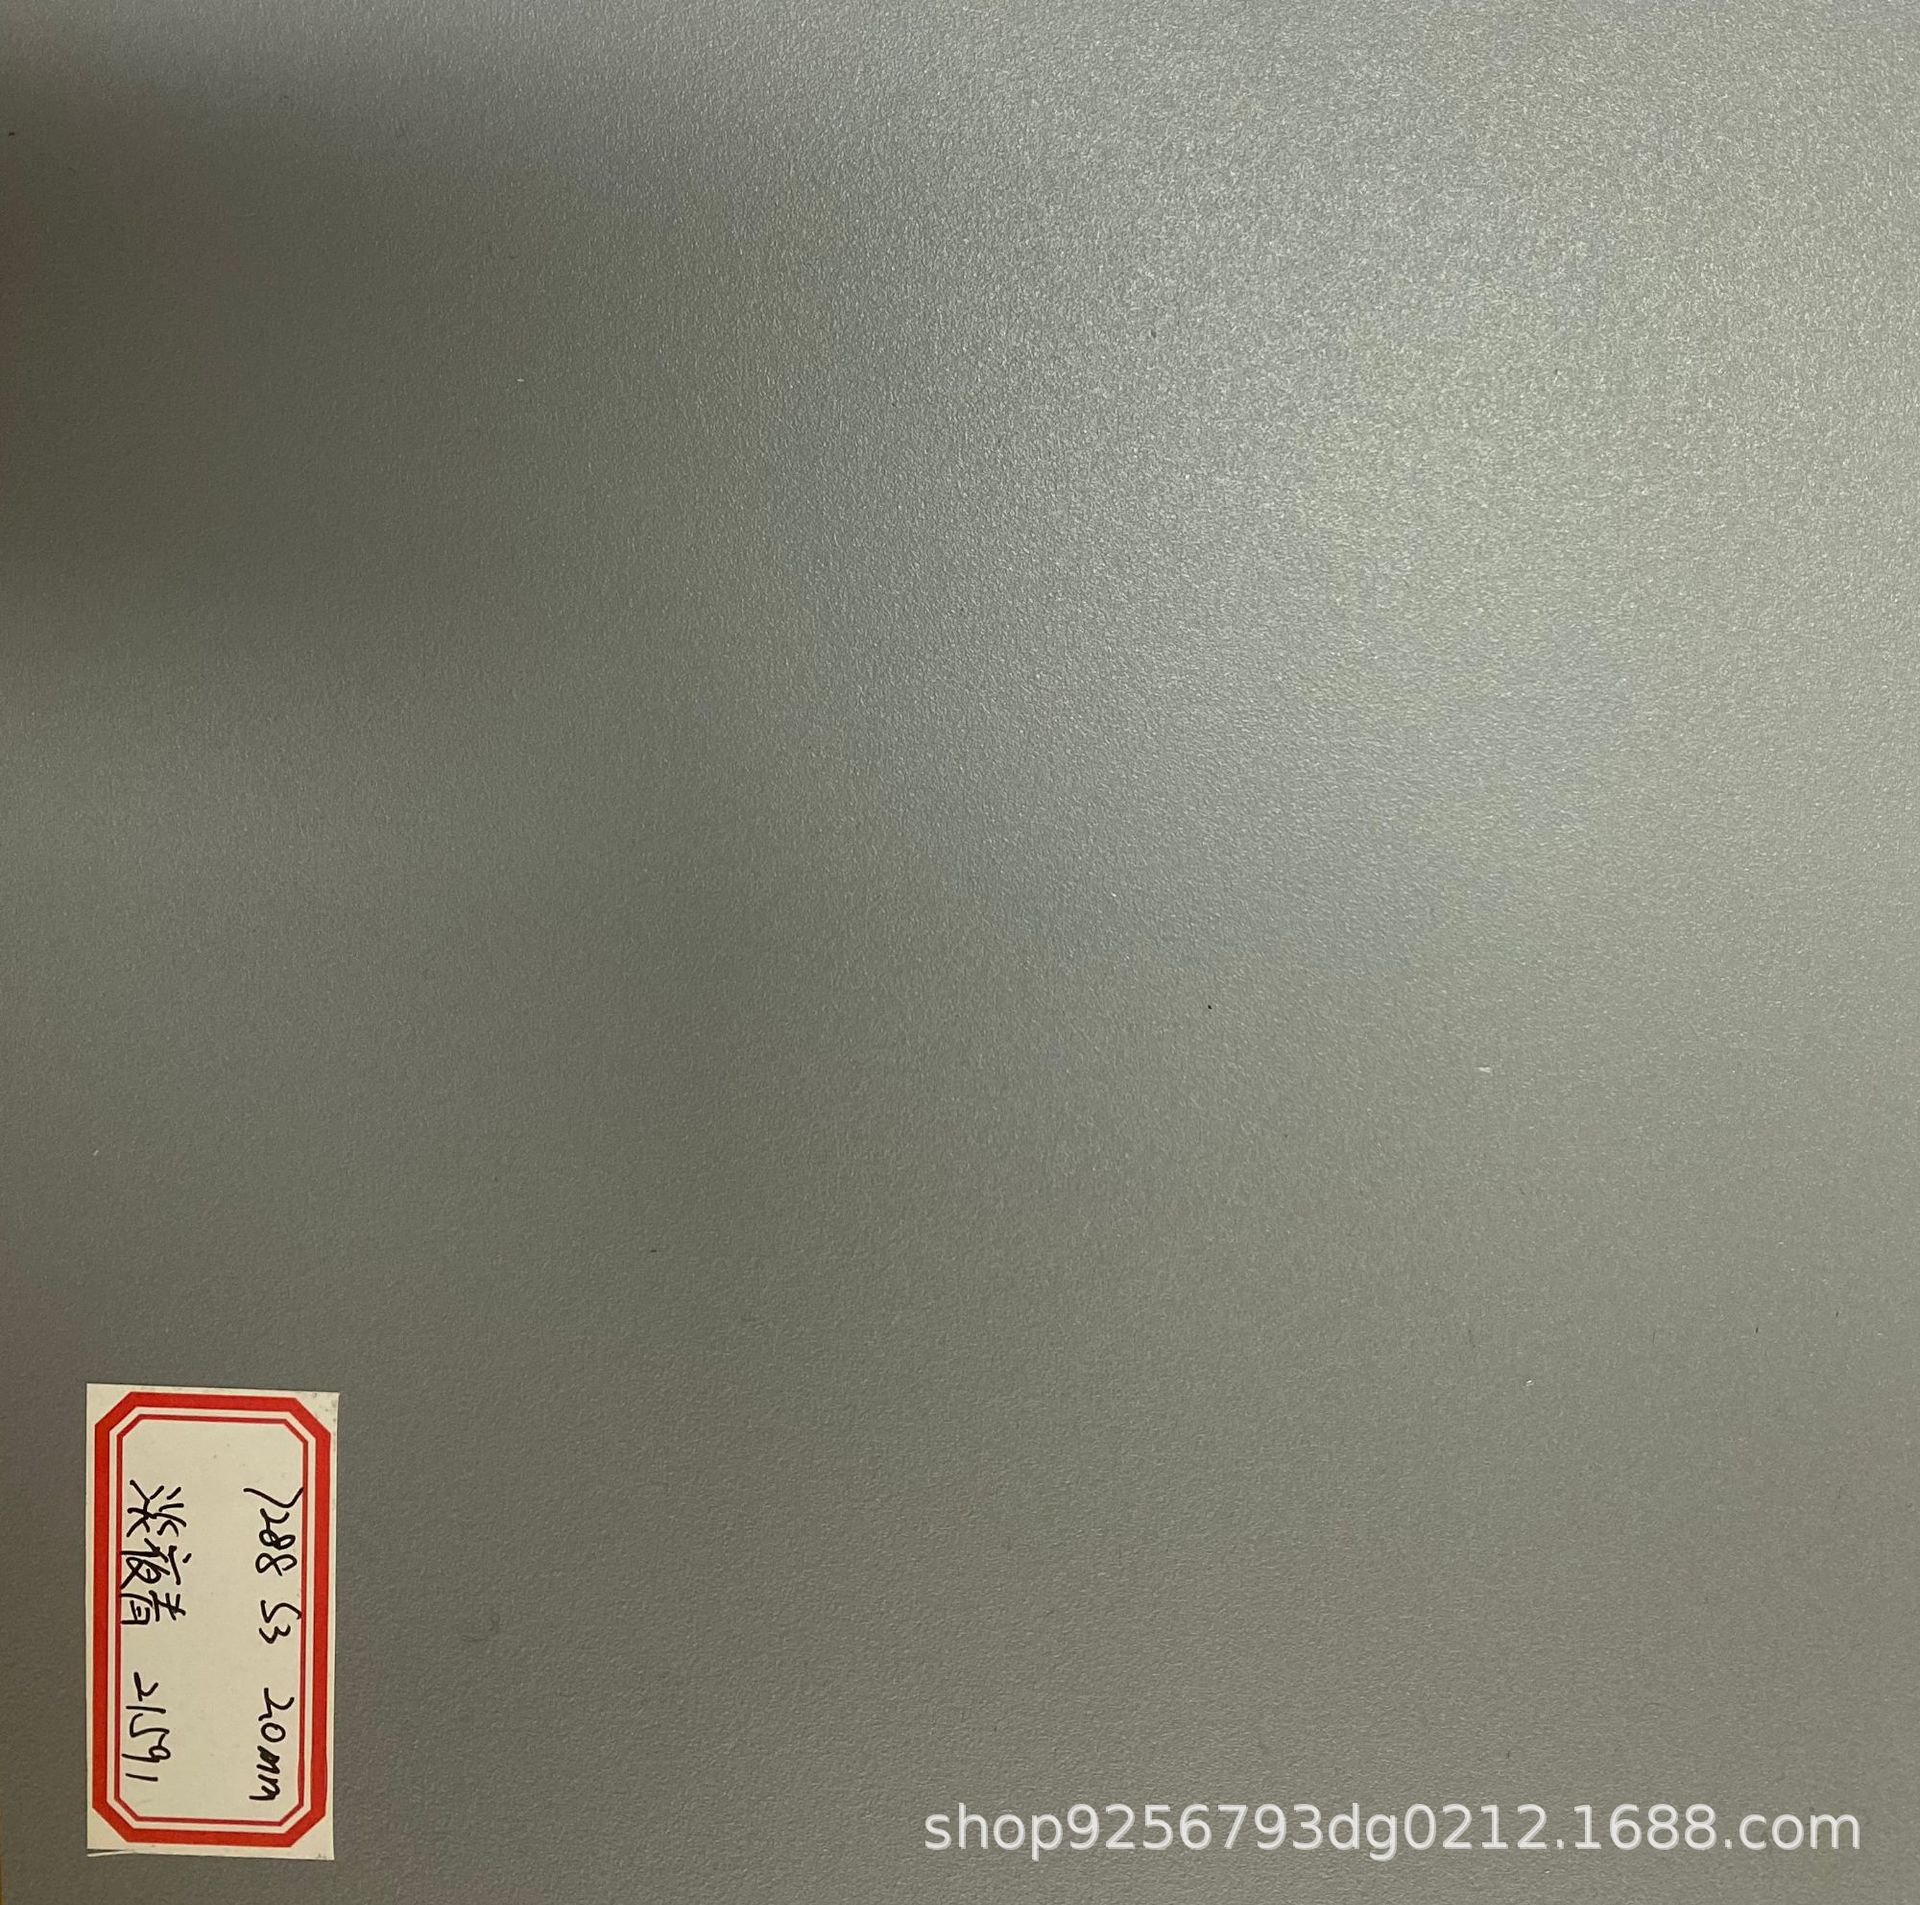 S板民用客舱内饰件维修PMA厂选择对标KT板的国产合金热塑板材吸塑